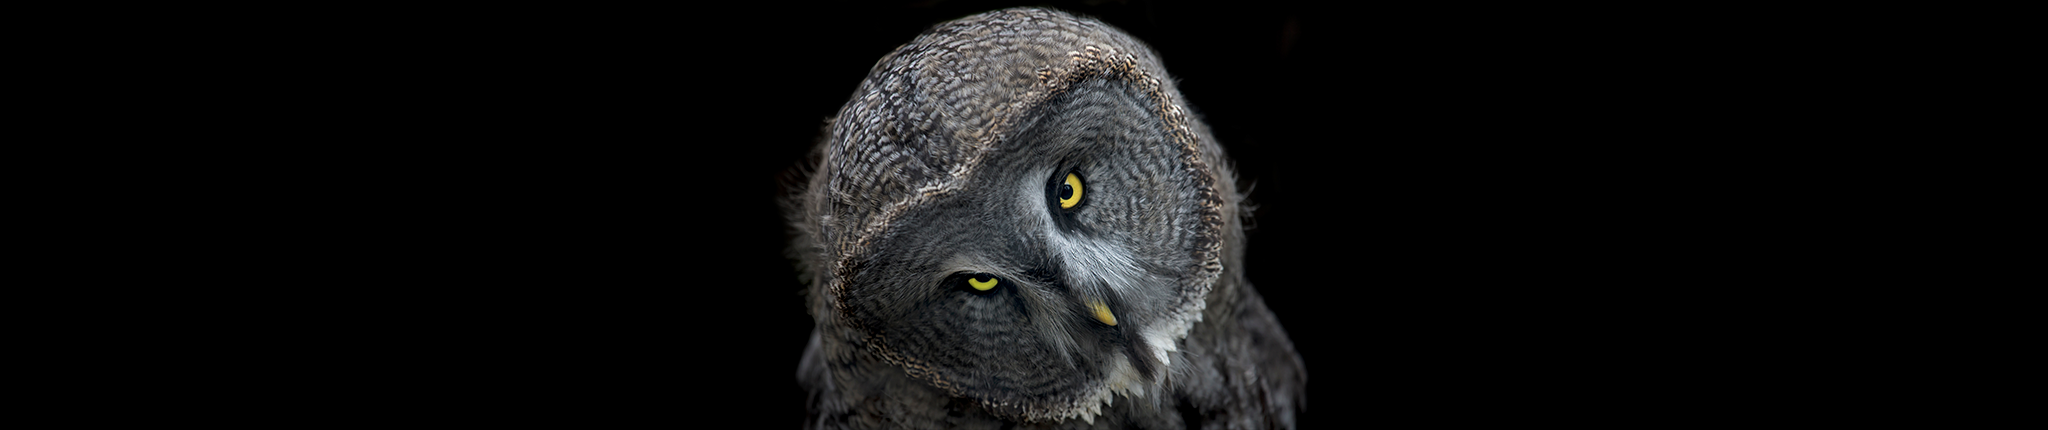 The Owl at Dusk